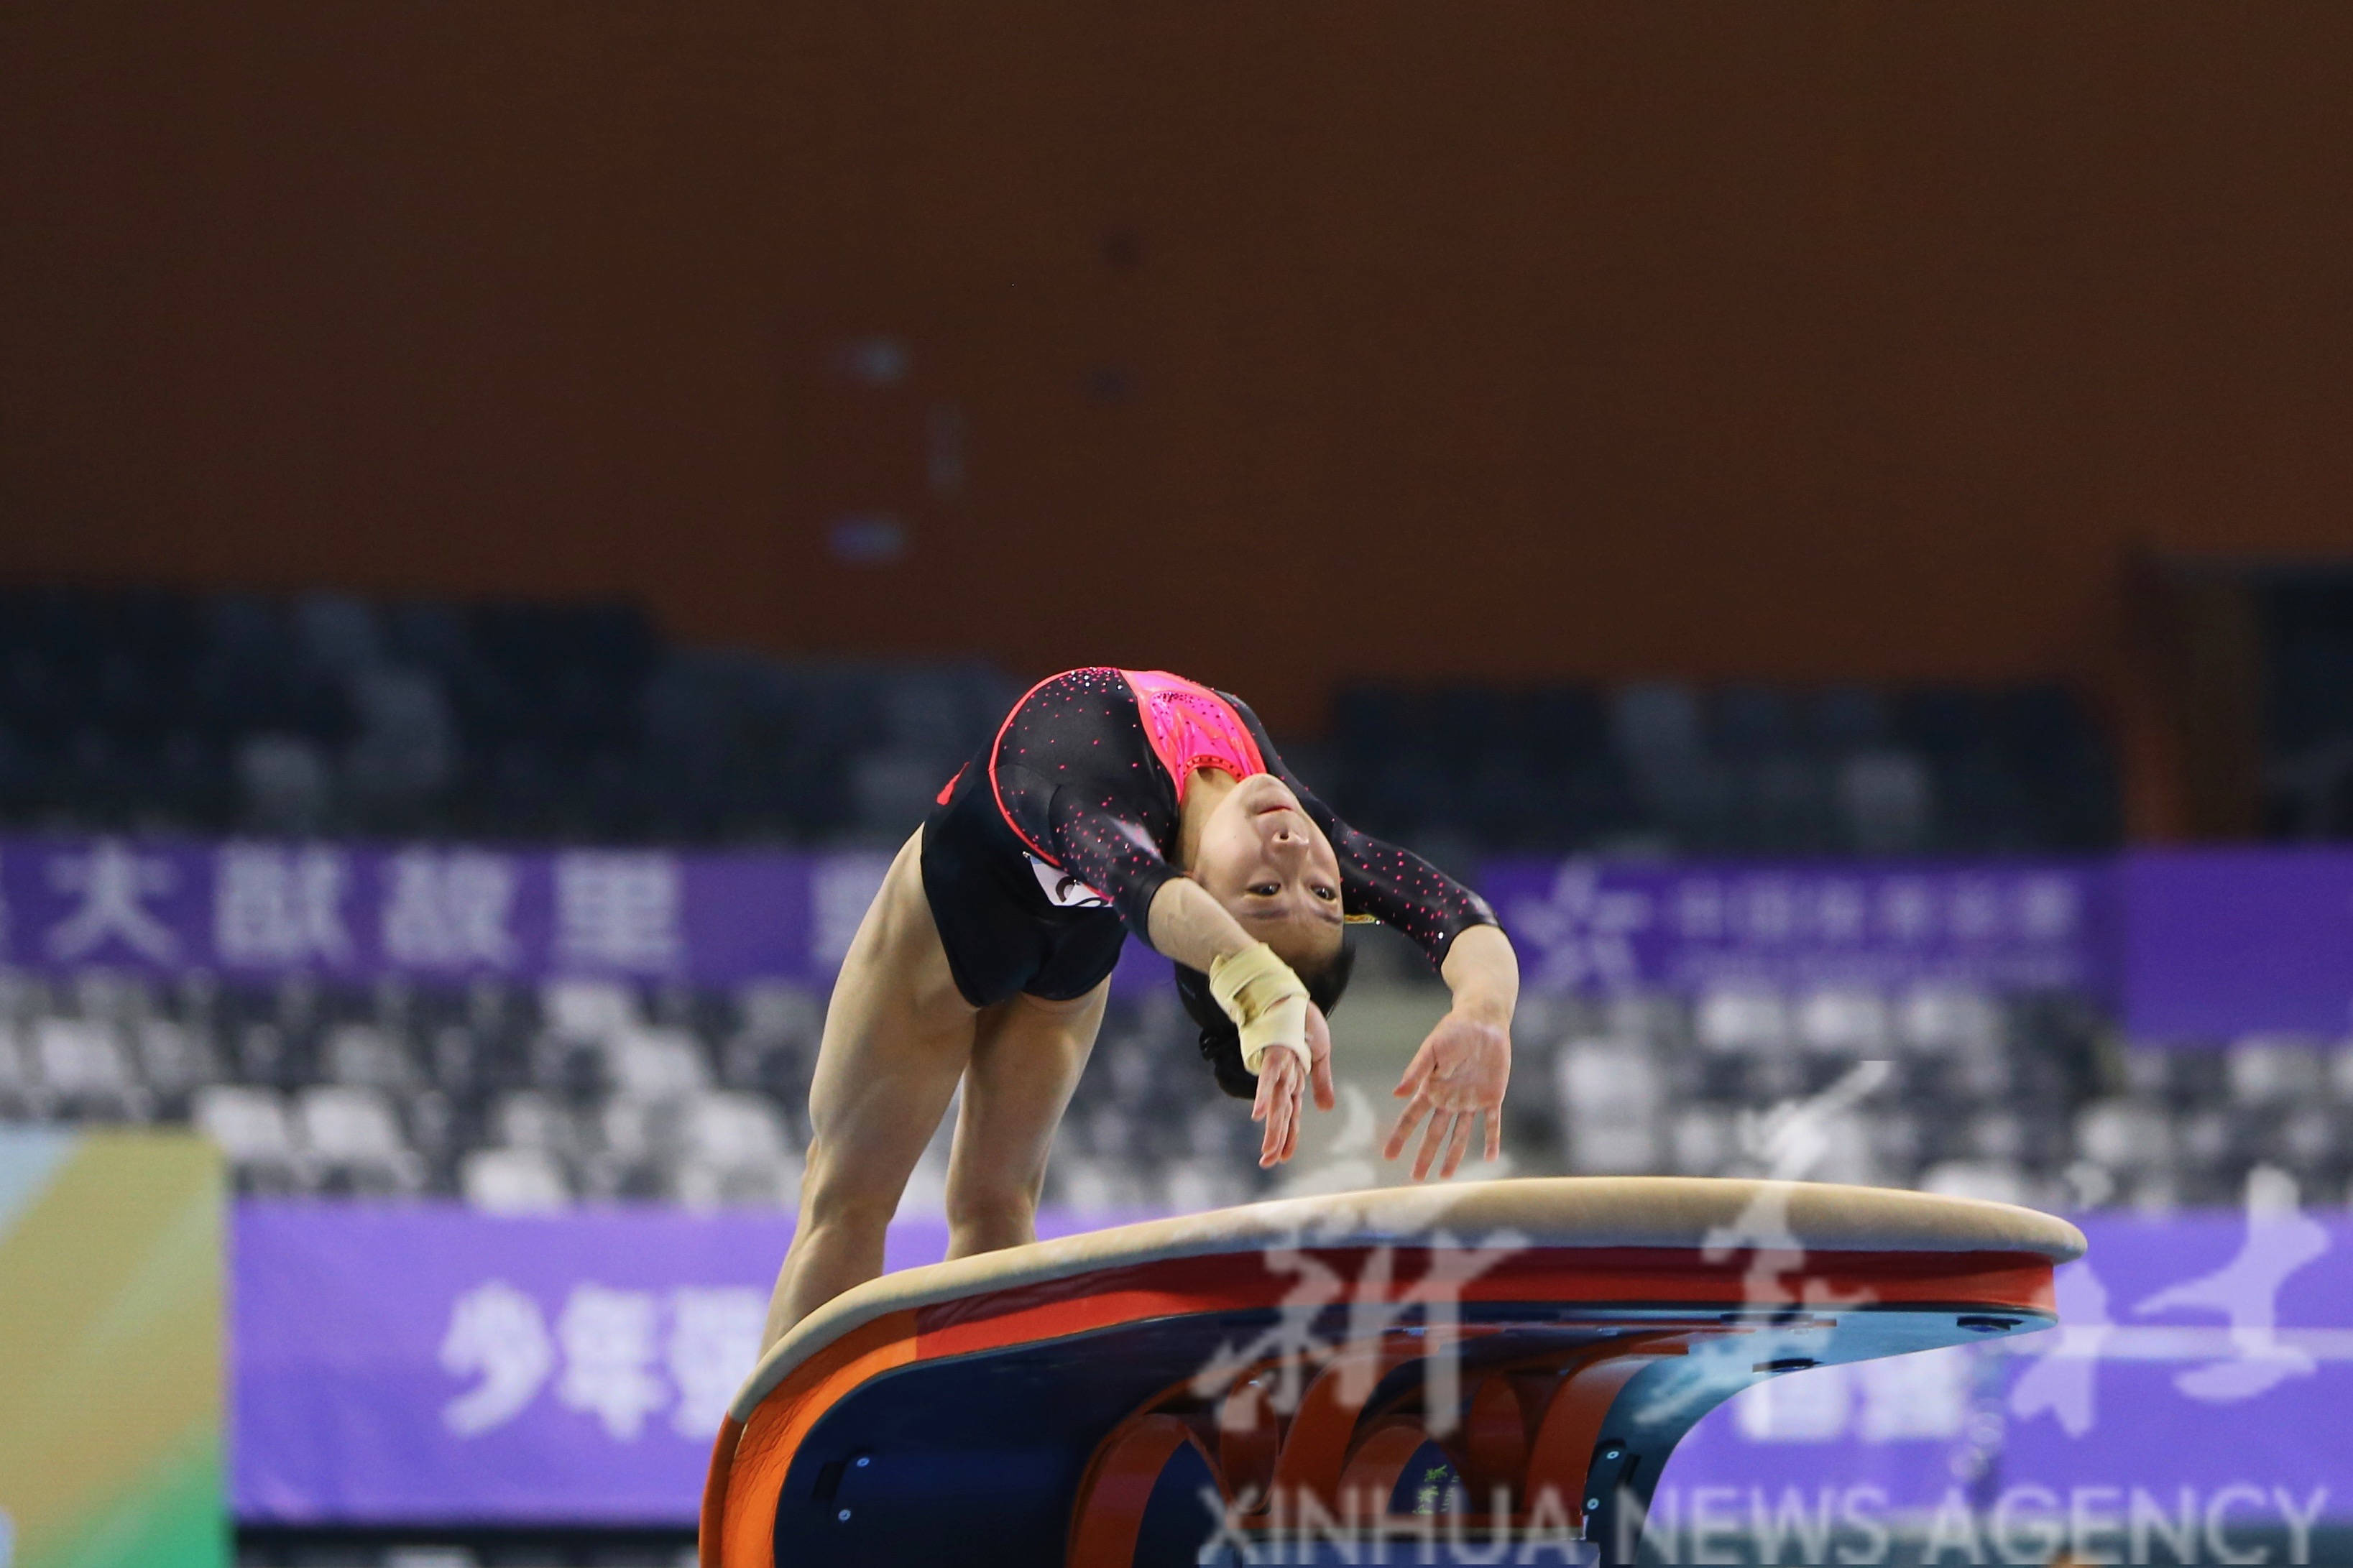 体操—全国锦标赛:祁琦获得女子个人全能季军